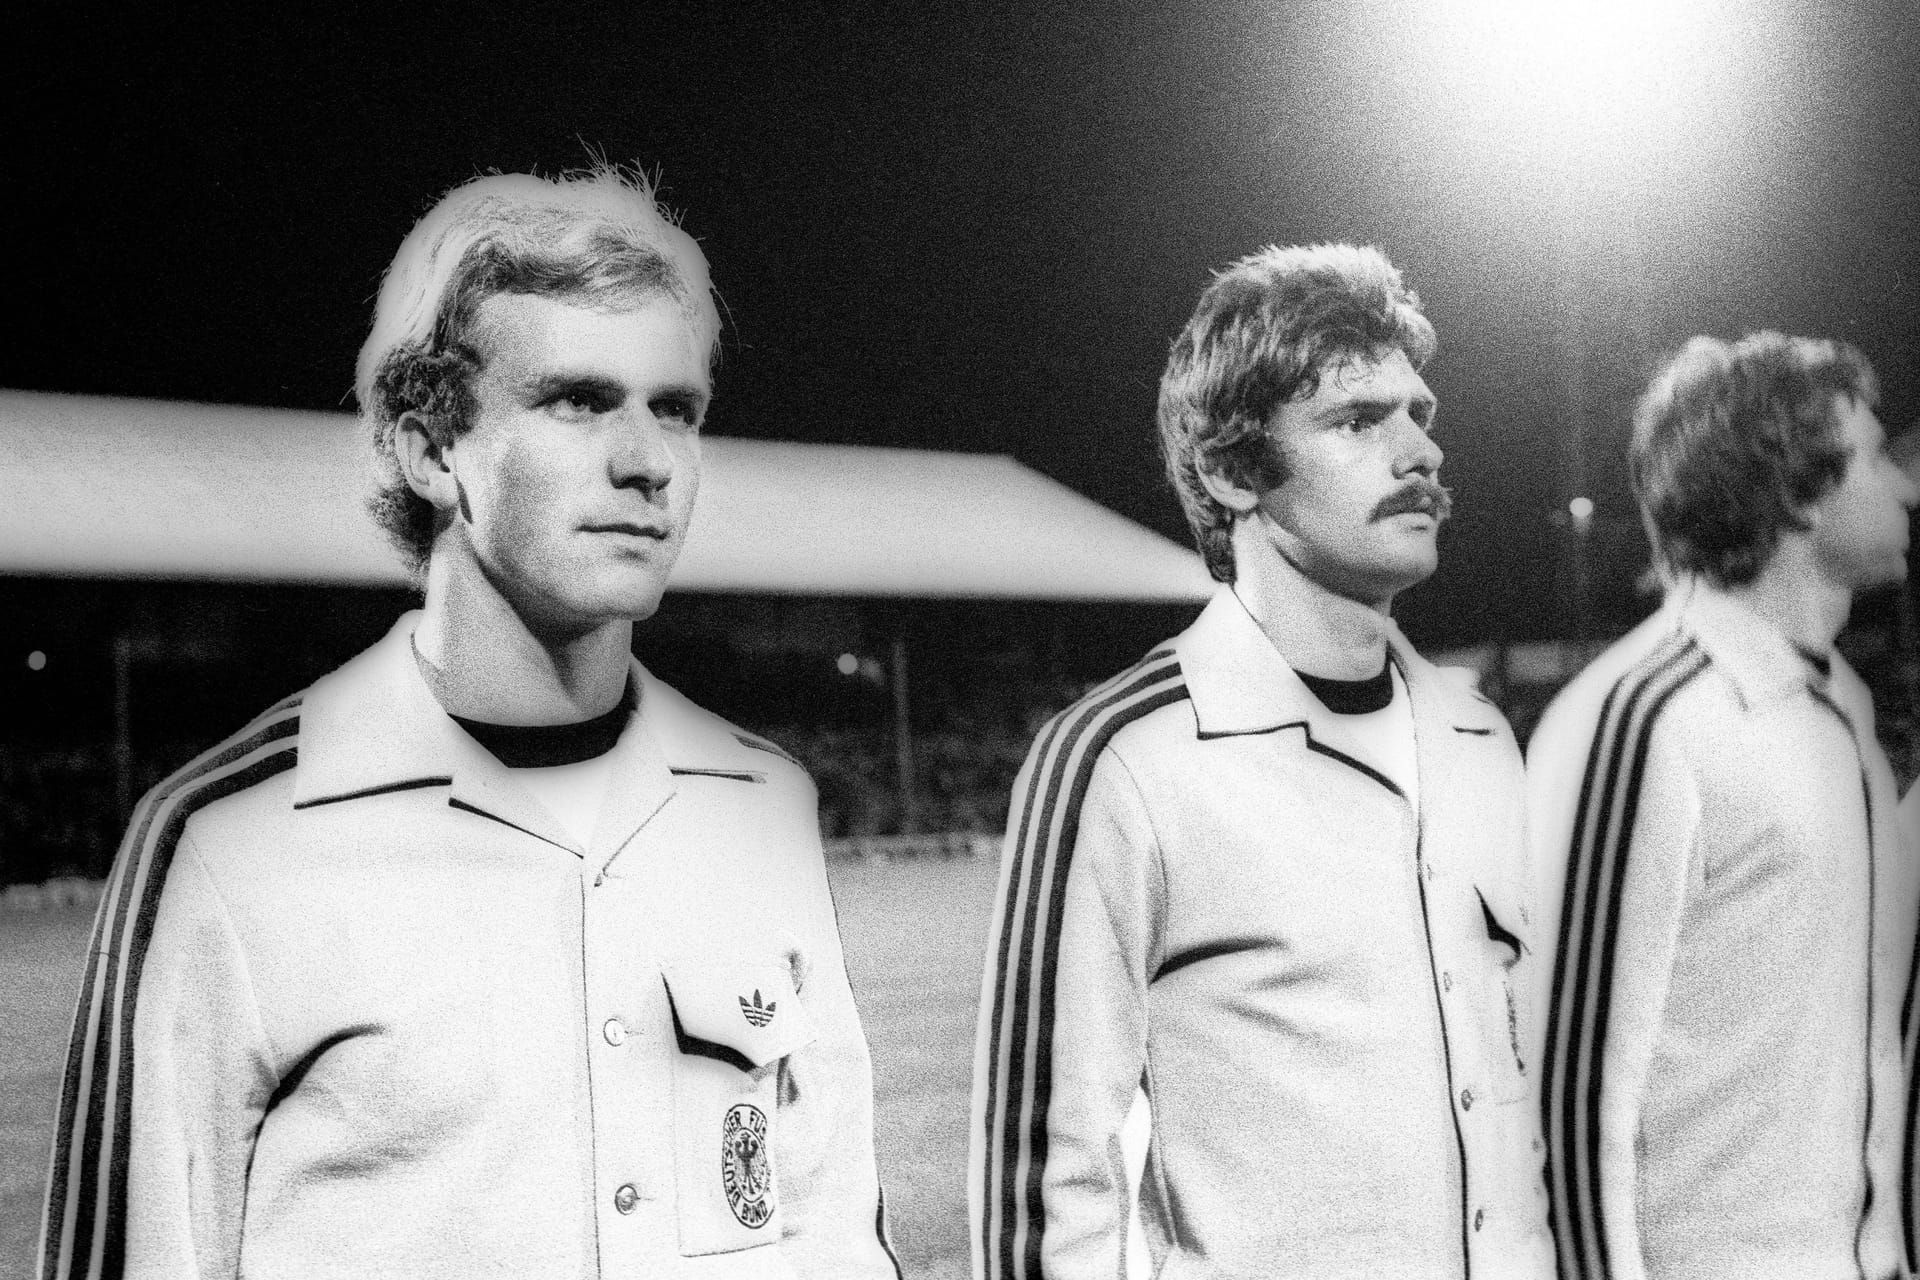 Erstes Länderspiel: Am 06. Oktober 1976 trägt Rummenigge im Länderspiel in Wales zum ersten Mal das deutsche Trikot. Die DFB-Elf gewinnt 2:0.